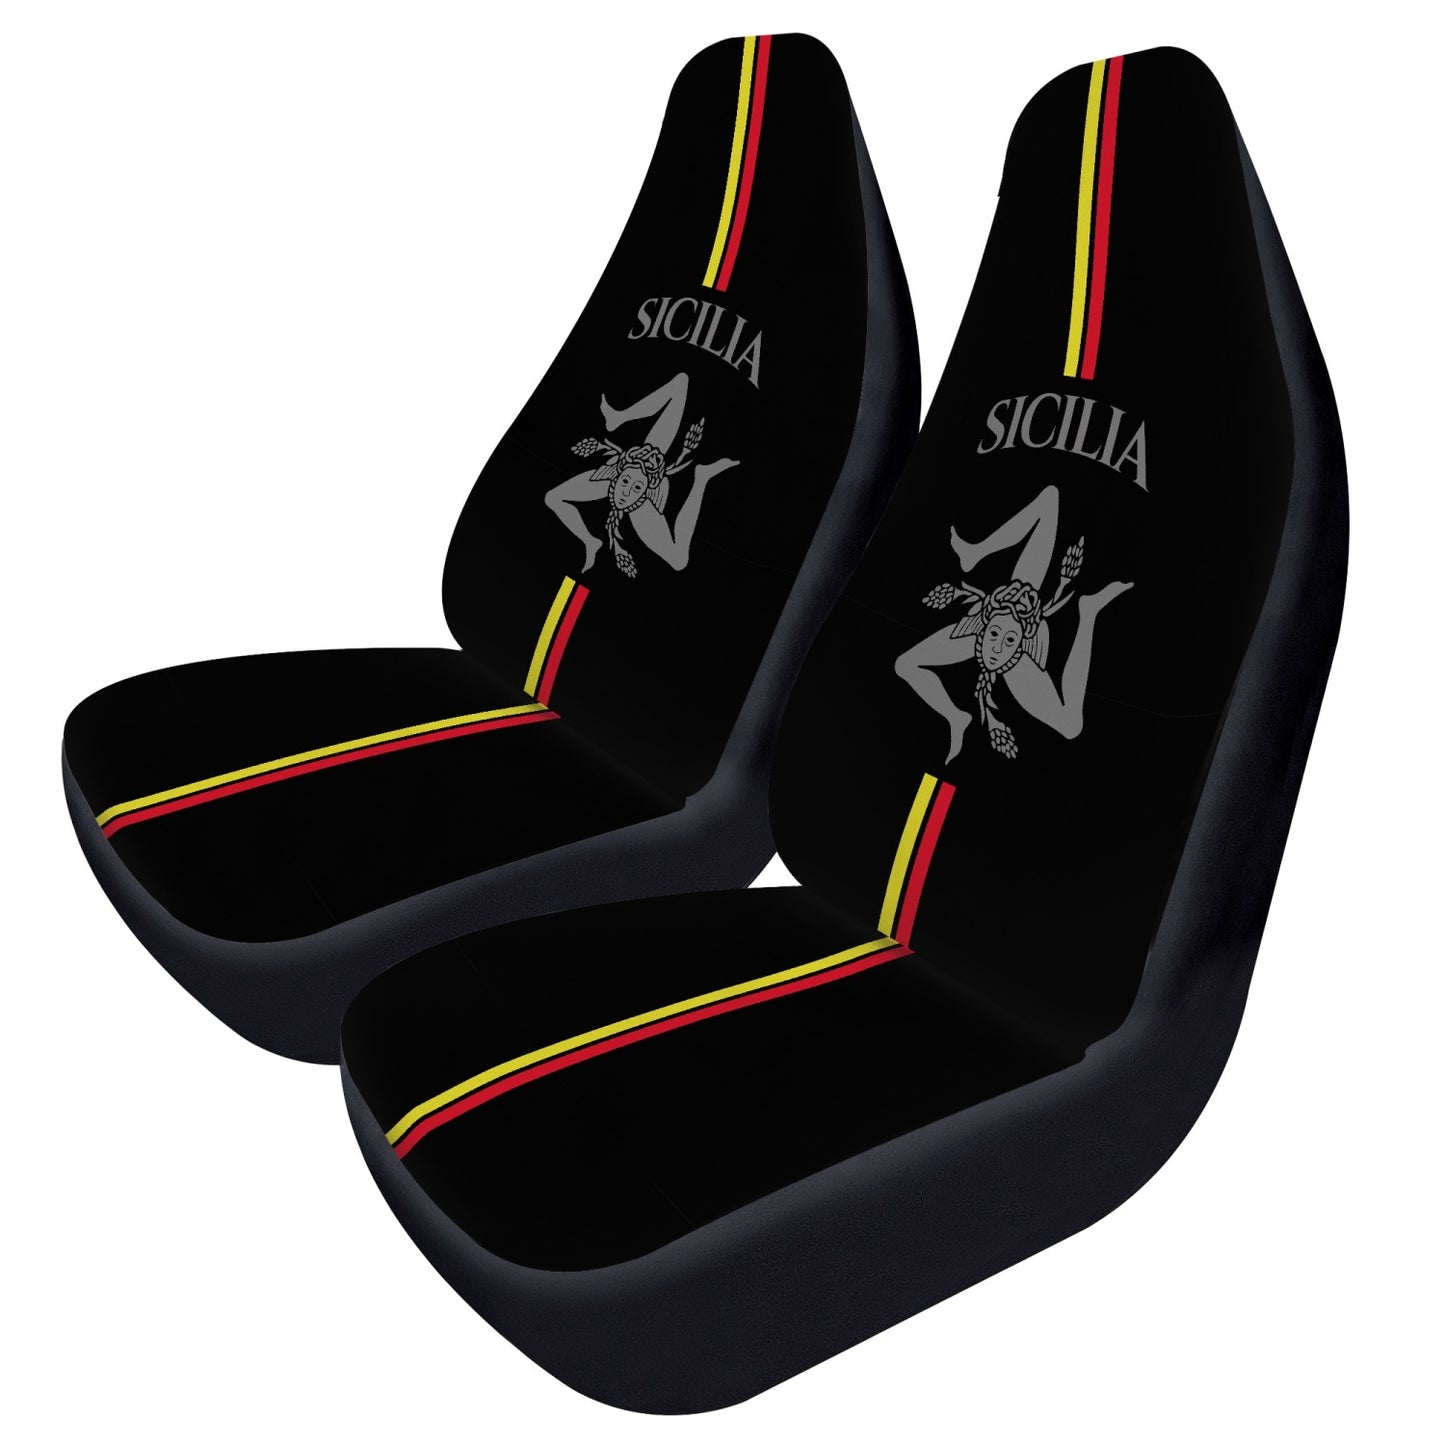 Sicilia Car Seats Cover 2Pcs